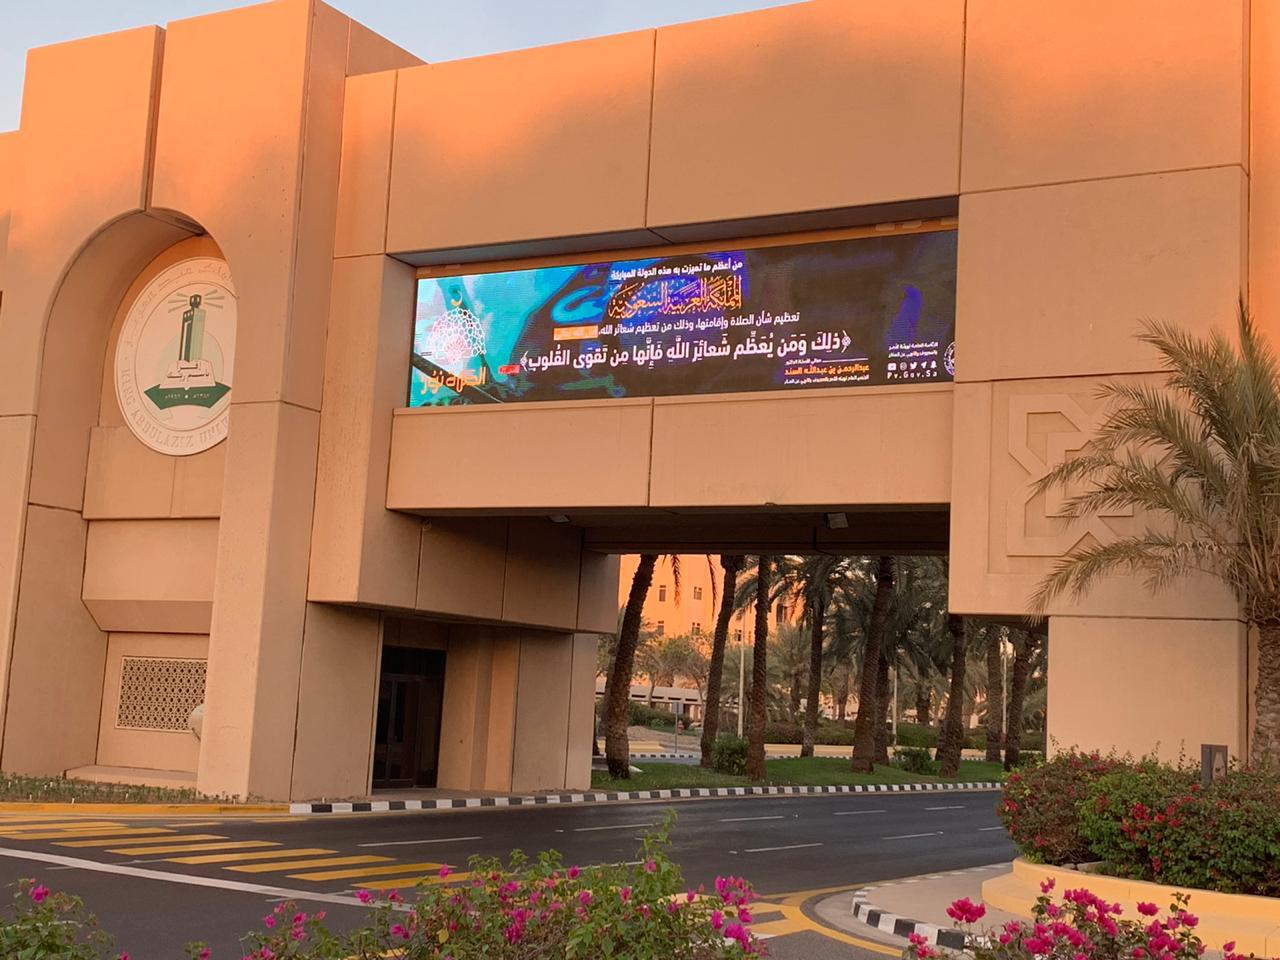 هيئة جدة  تُطلق حملة “الصلاة نور” على شاشات جامعة الملك عبدالعزيز